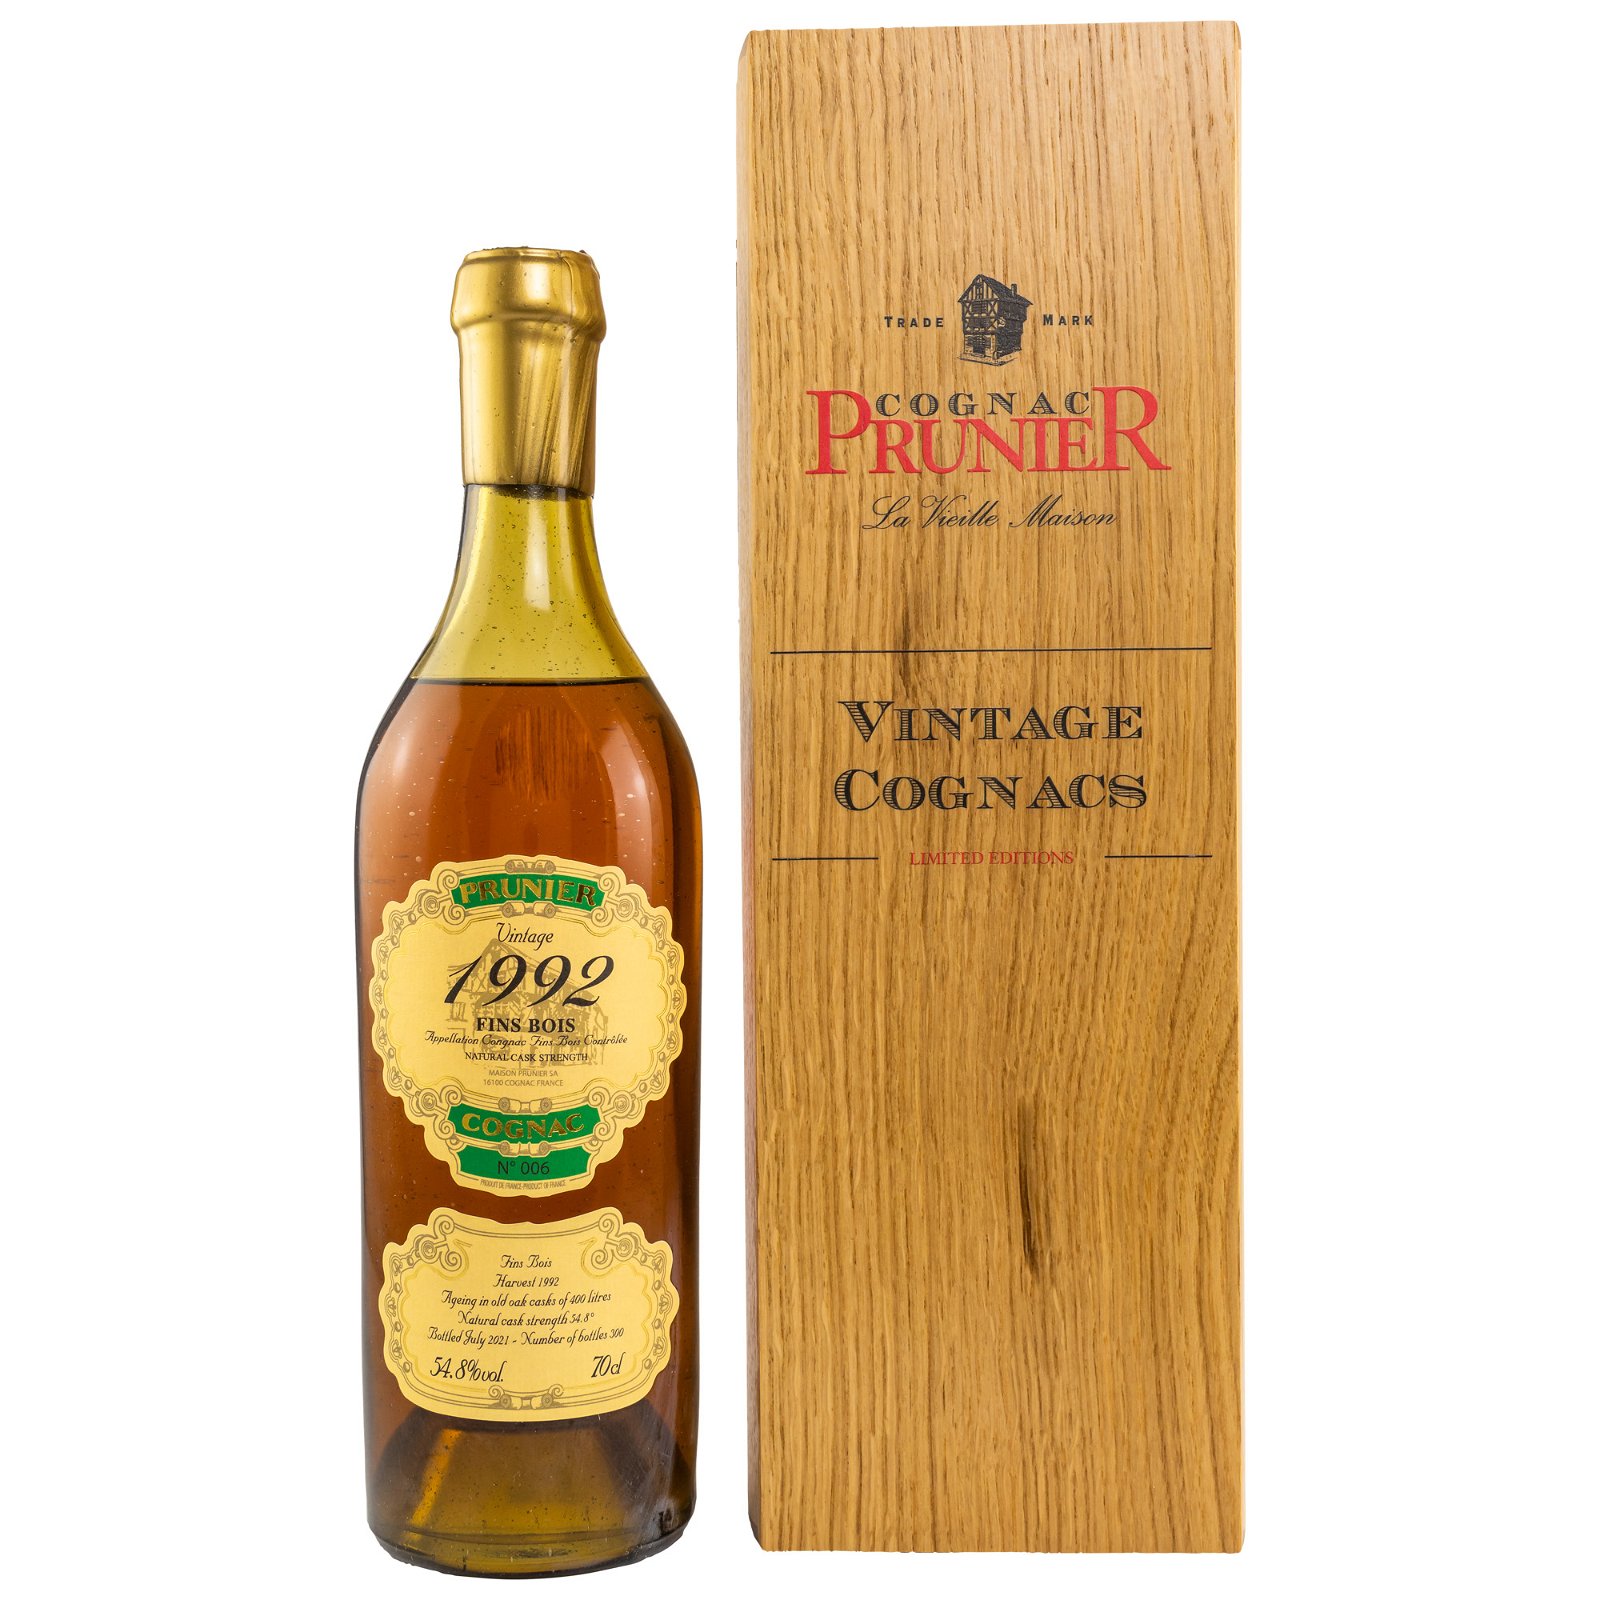 Prunier 1992/2021 Fins Bois Cognac (Vintage Cognacs)